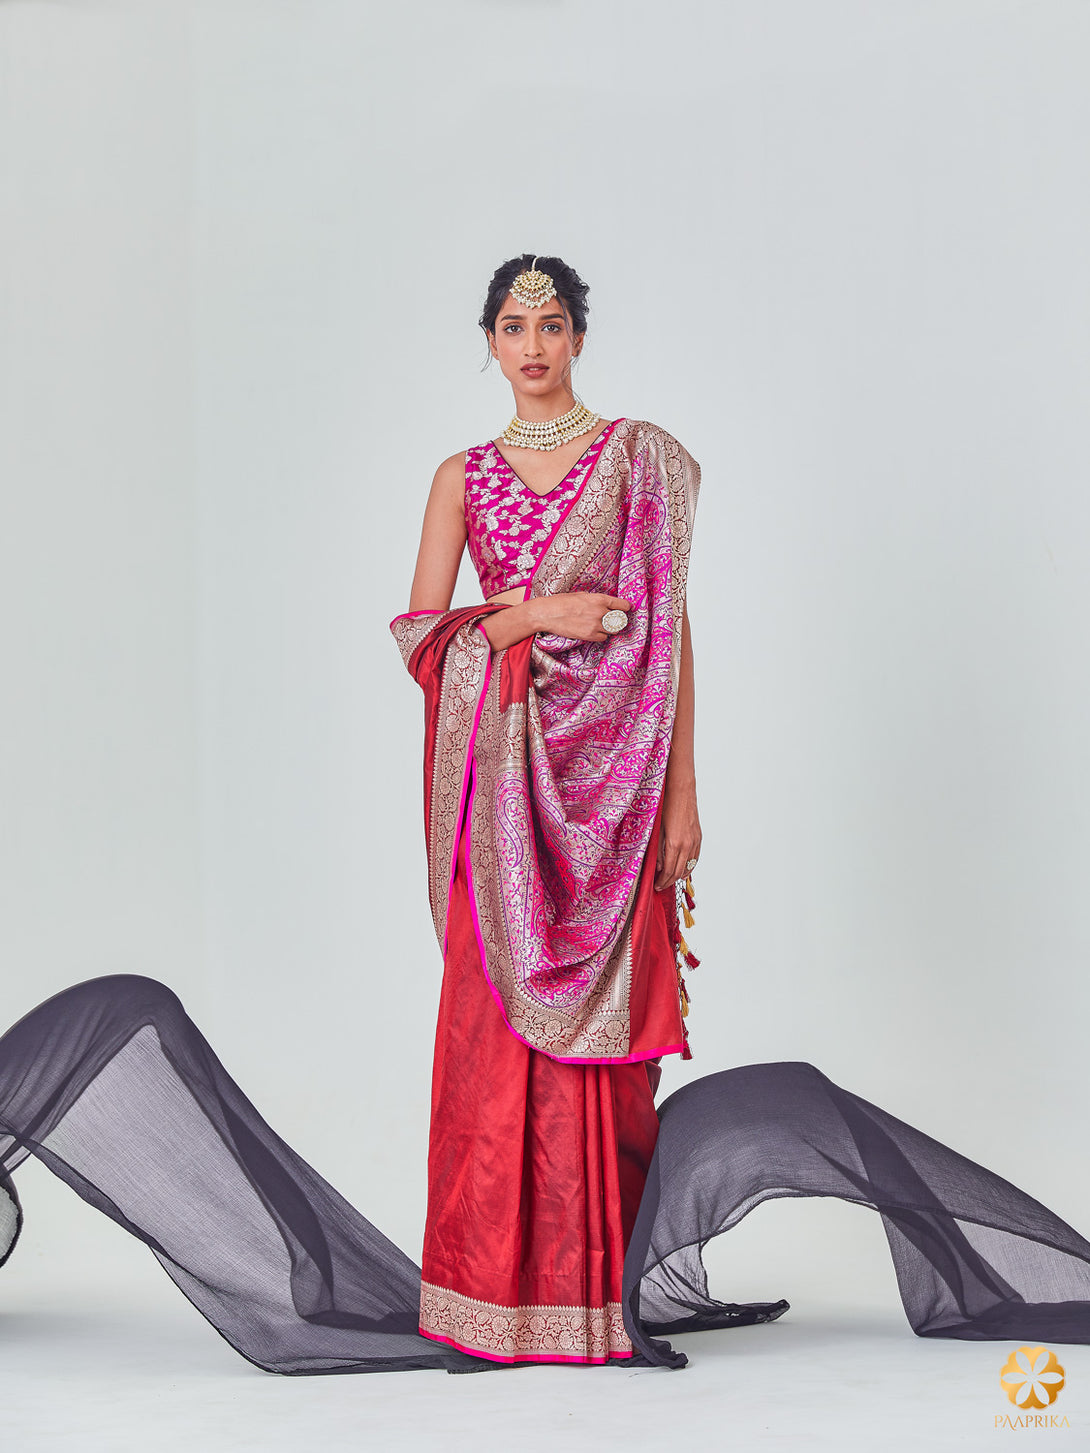 Stylish Woman Wearing Exquisite Maroon Jamawar Banarasi Saree - Regal and Enchanting